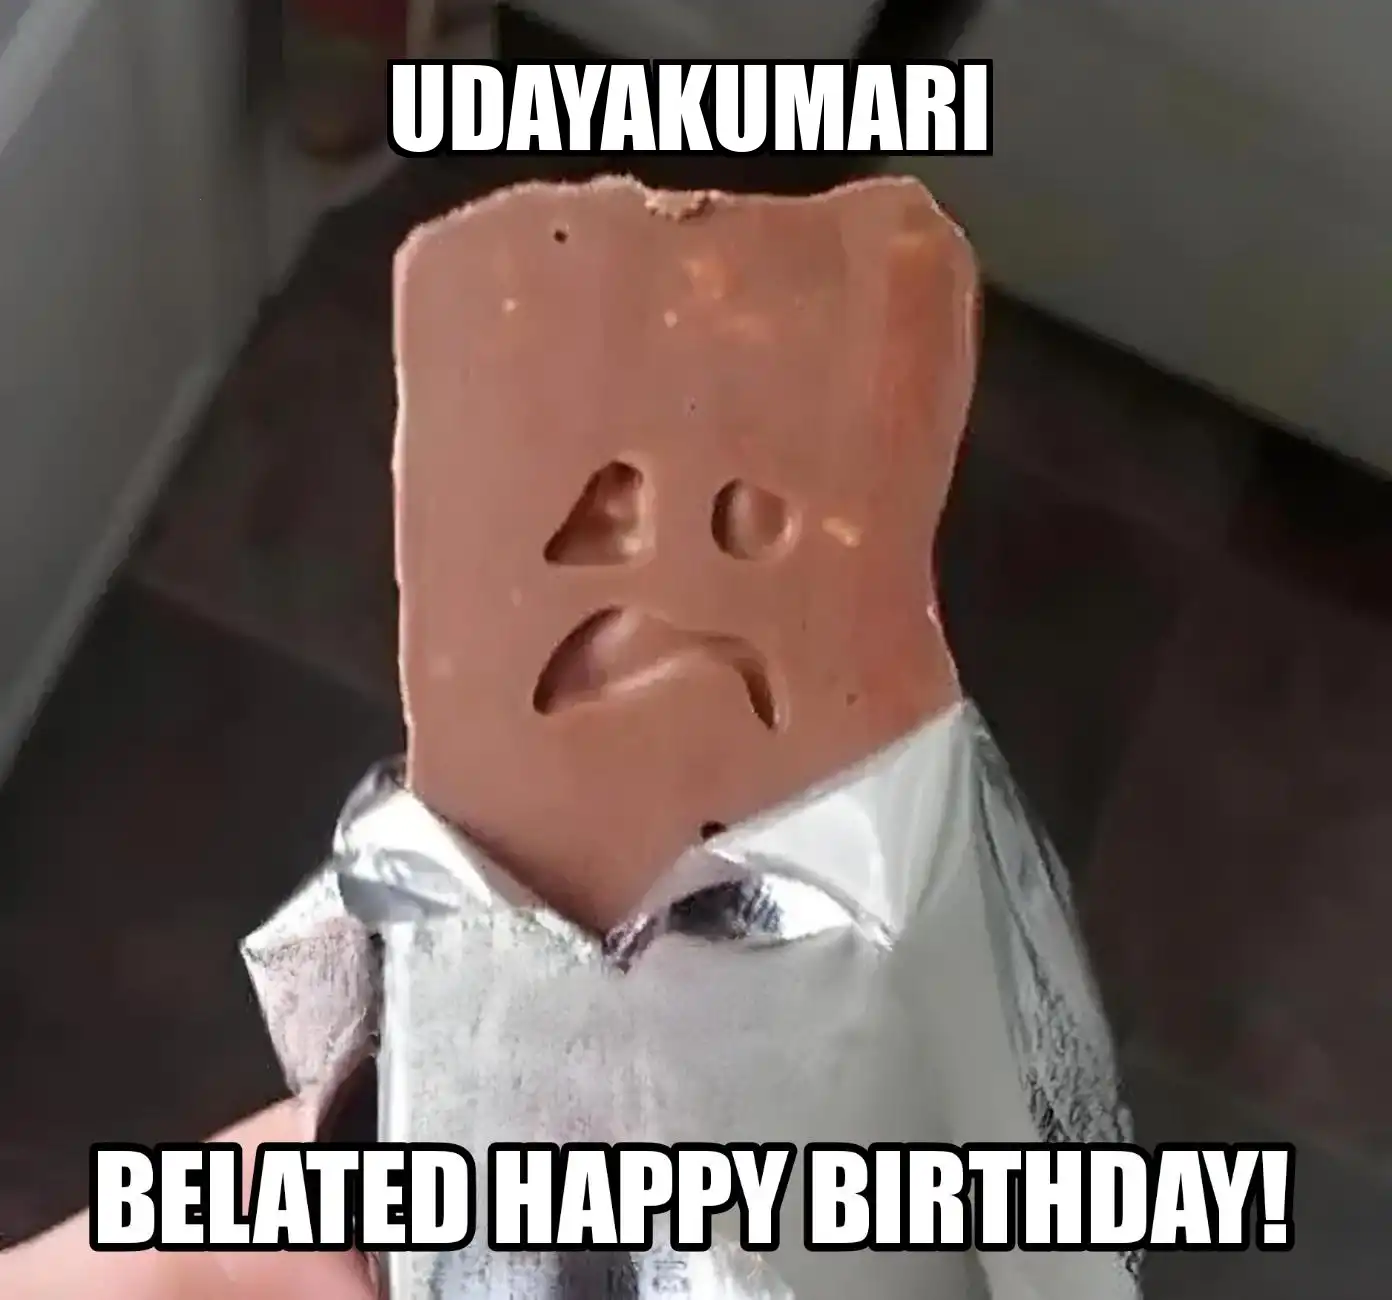 Happy Birthday Udayakumari Belated Happy Birthday Meme